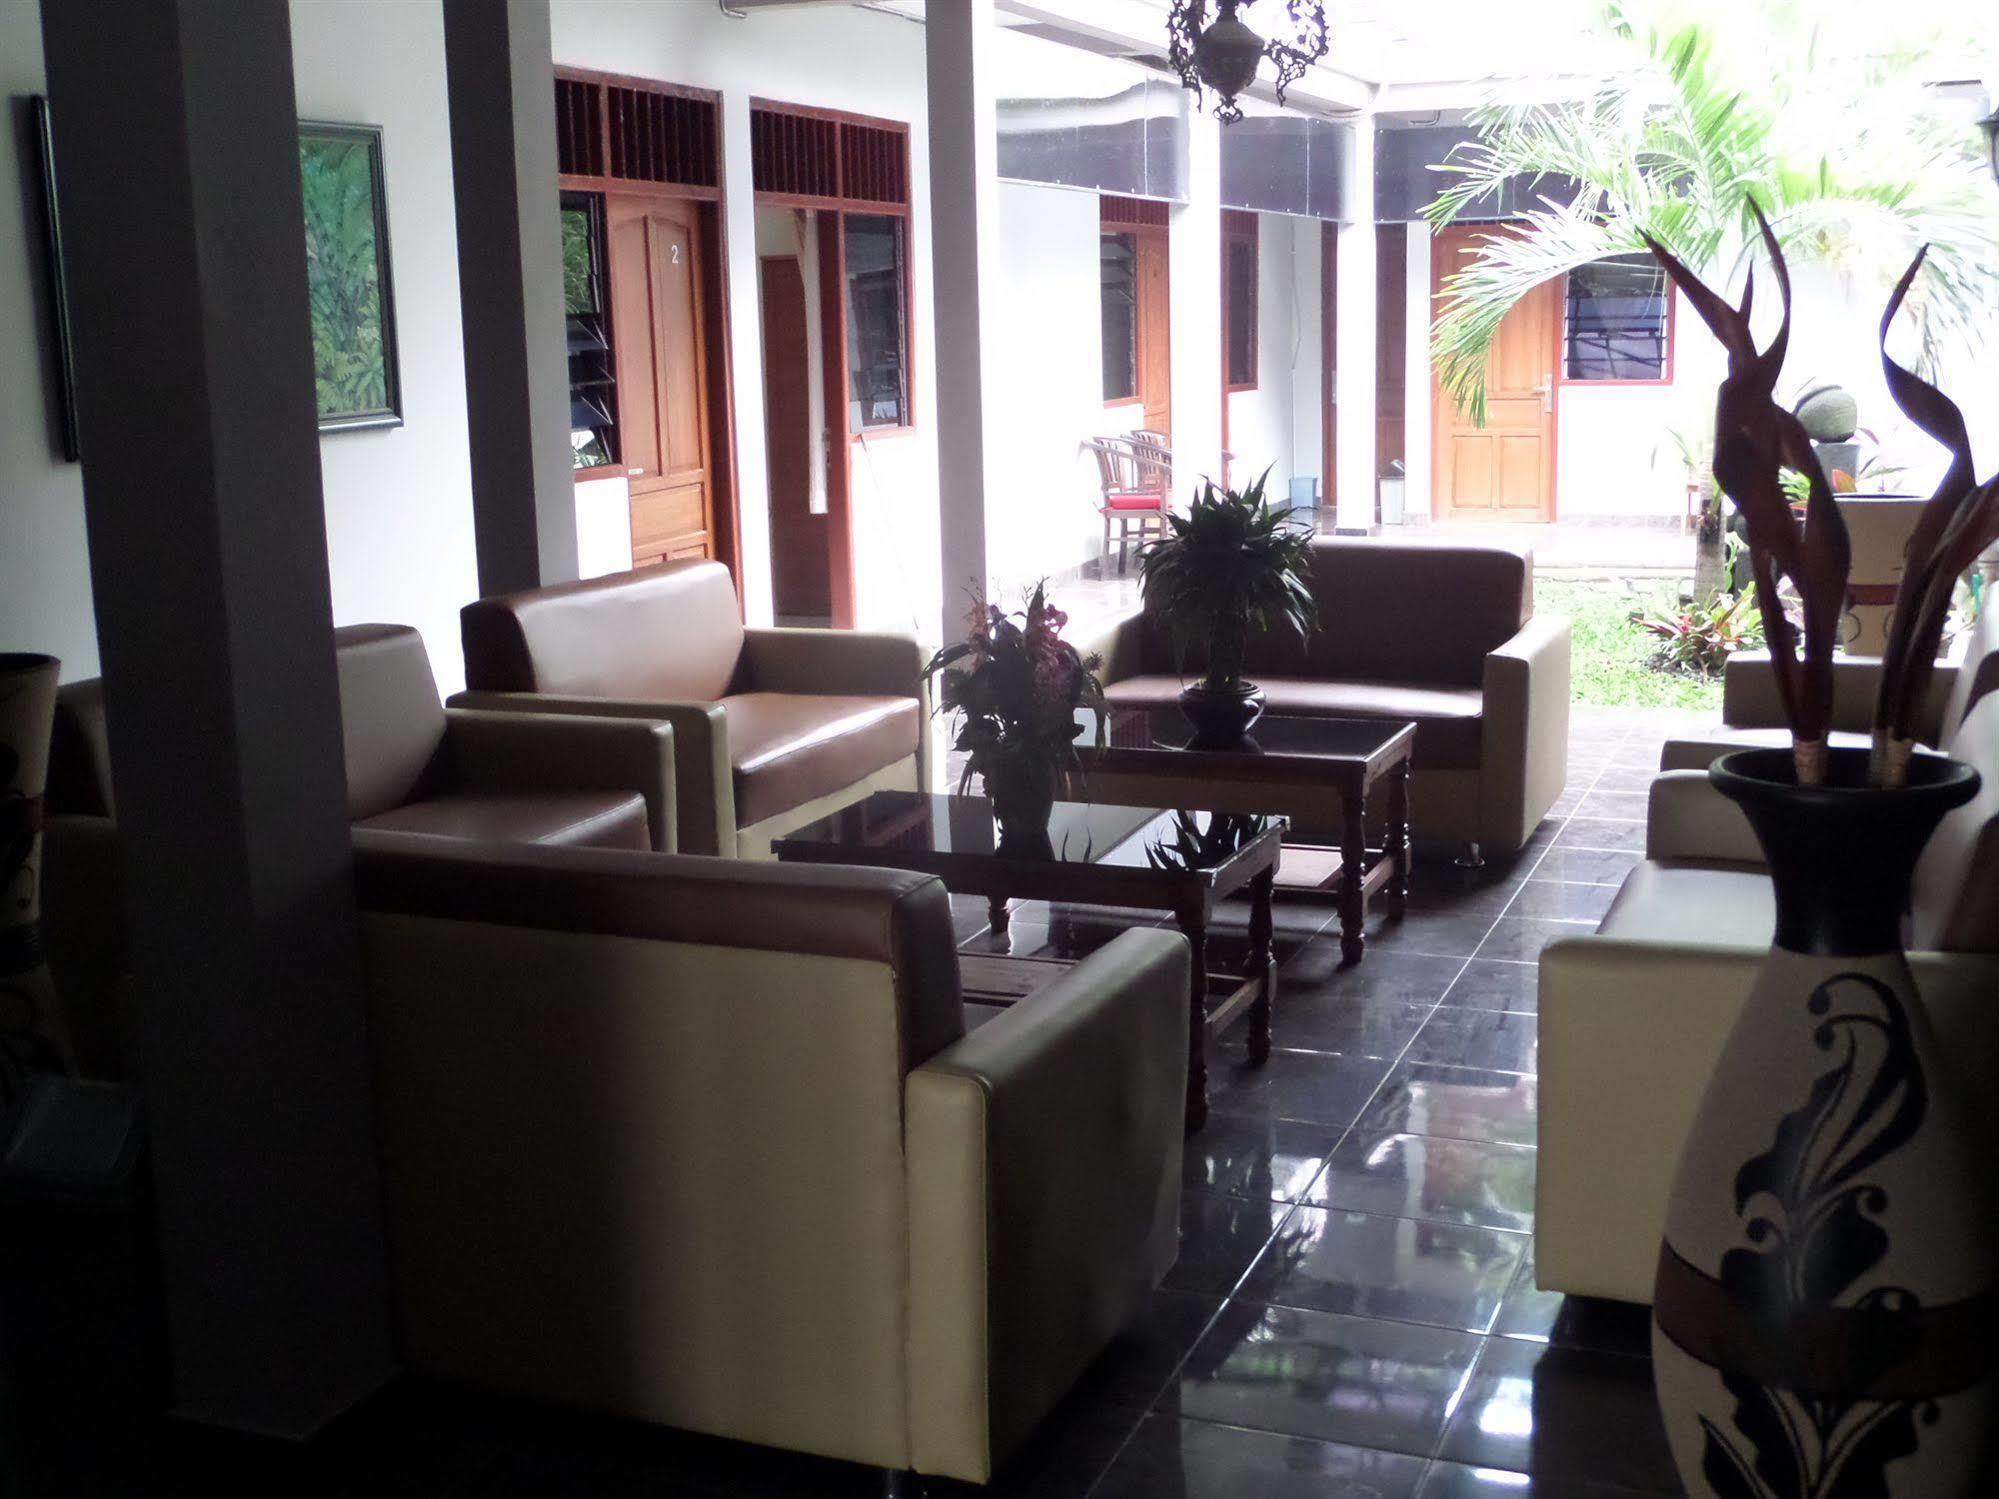 Hotel Oyo 198 Emdi House Seturan Yogyakarta Exterior foto